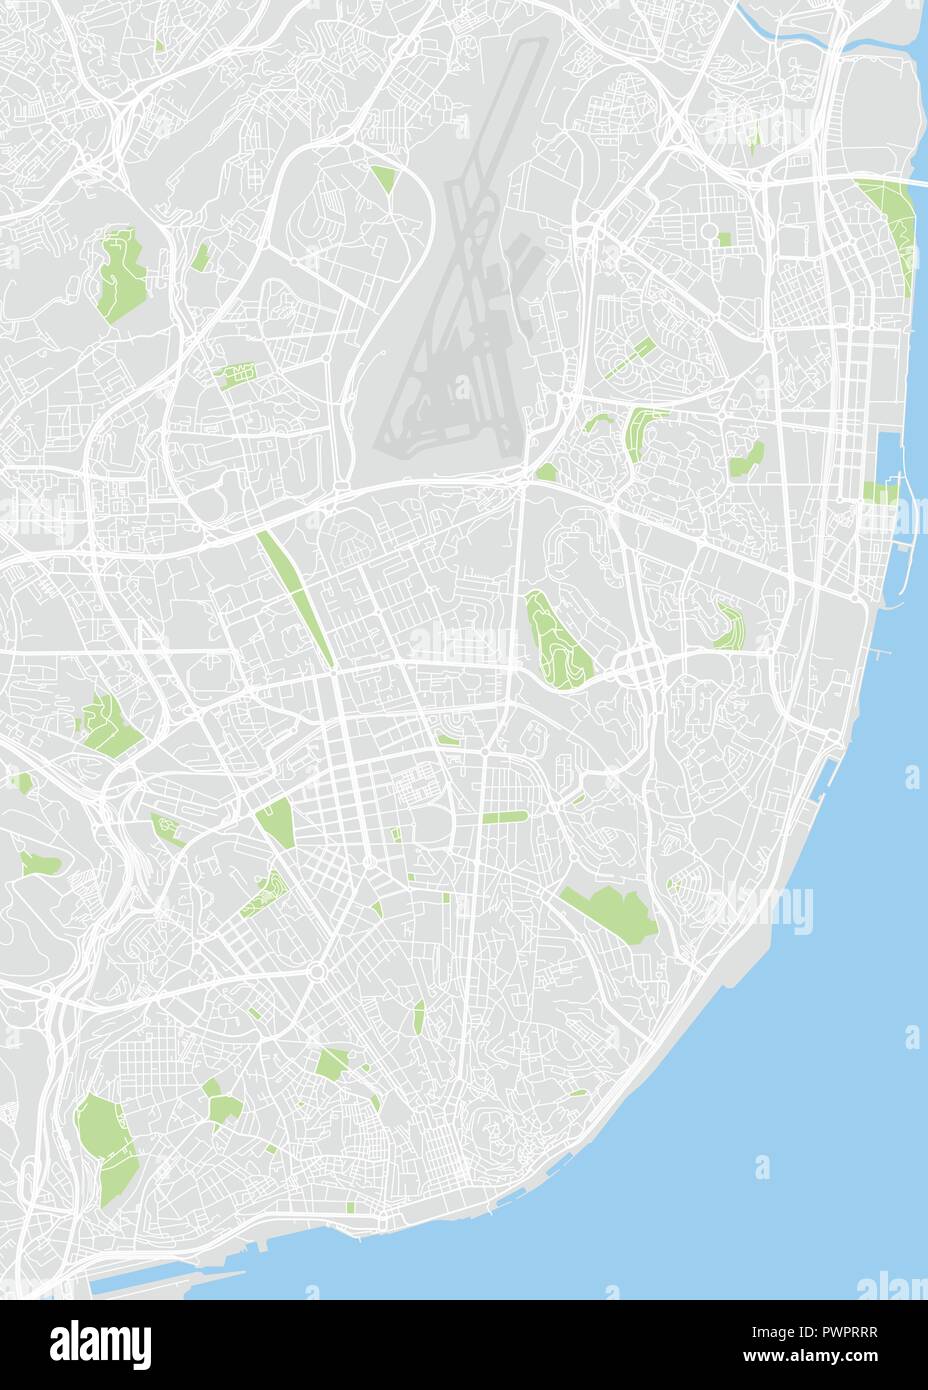 Lissabon farbige Vektorkarte detaillierten Plan der Stadt, Flüsse und Straßen Stock Vektor